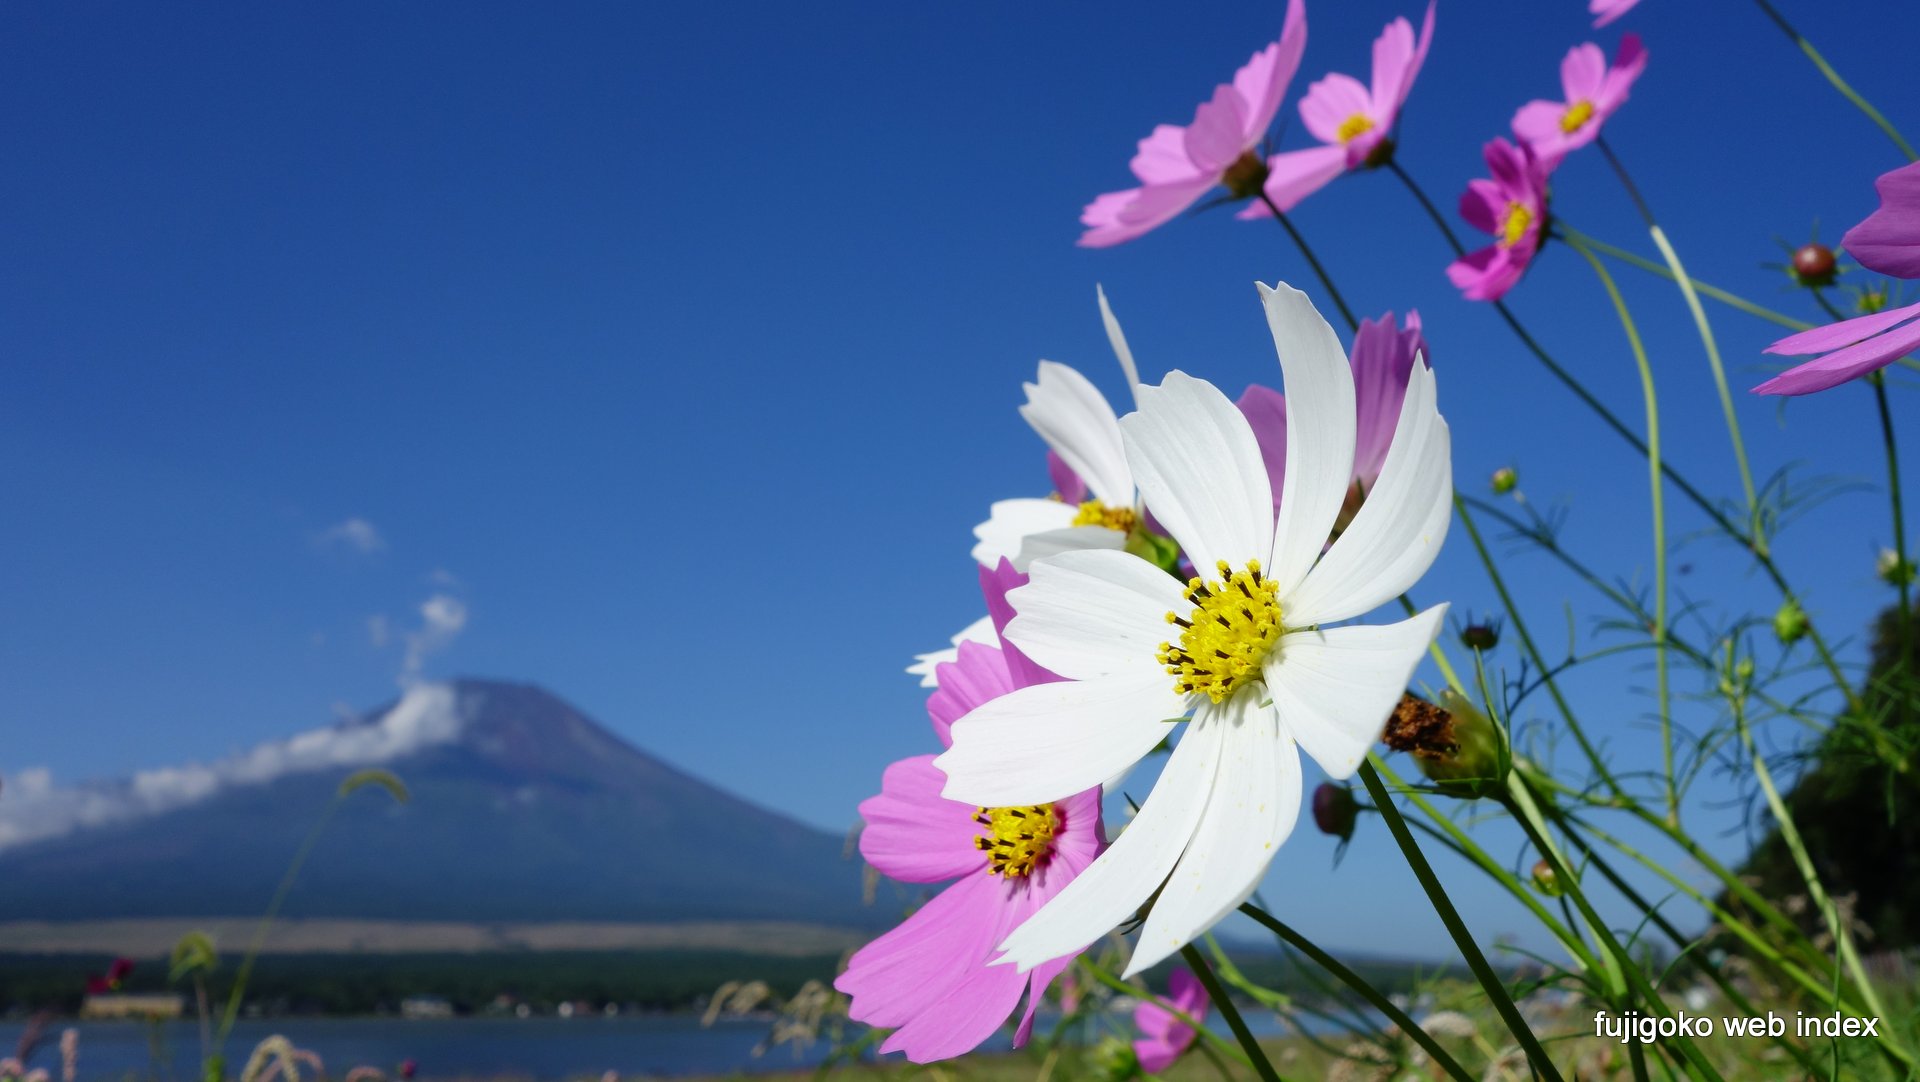 富士五湖webインデックス 壁紙 ちゃりblog 秋の山中湖